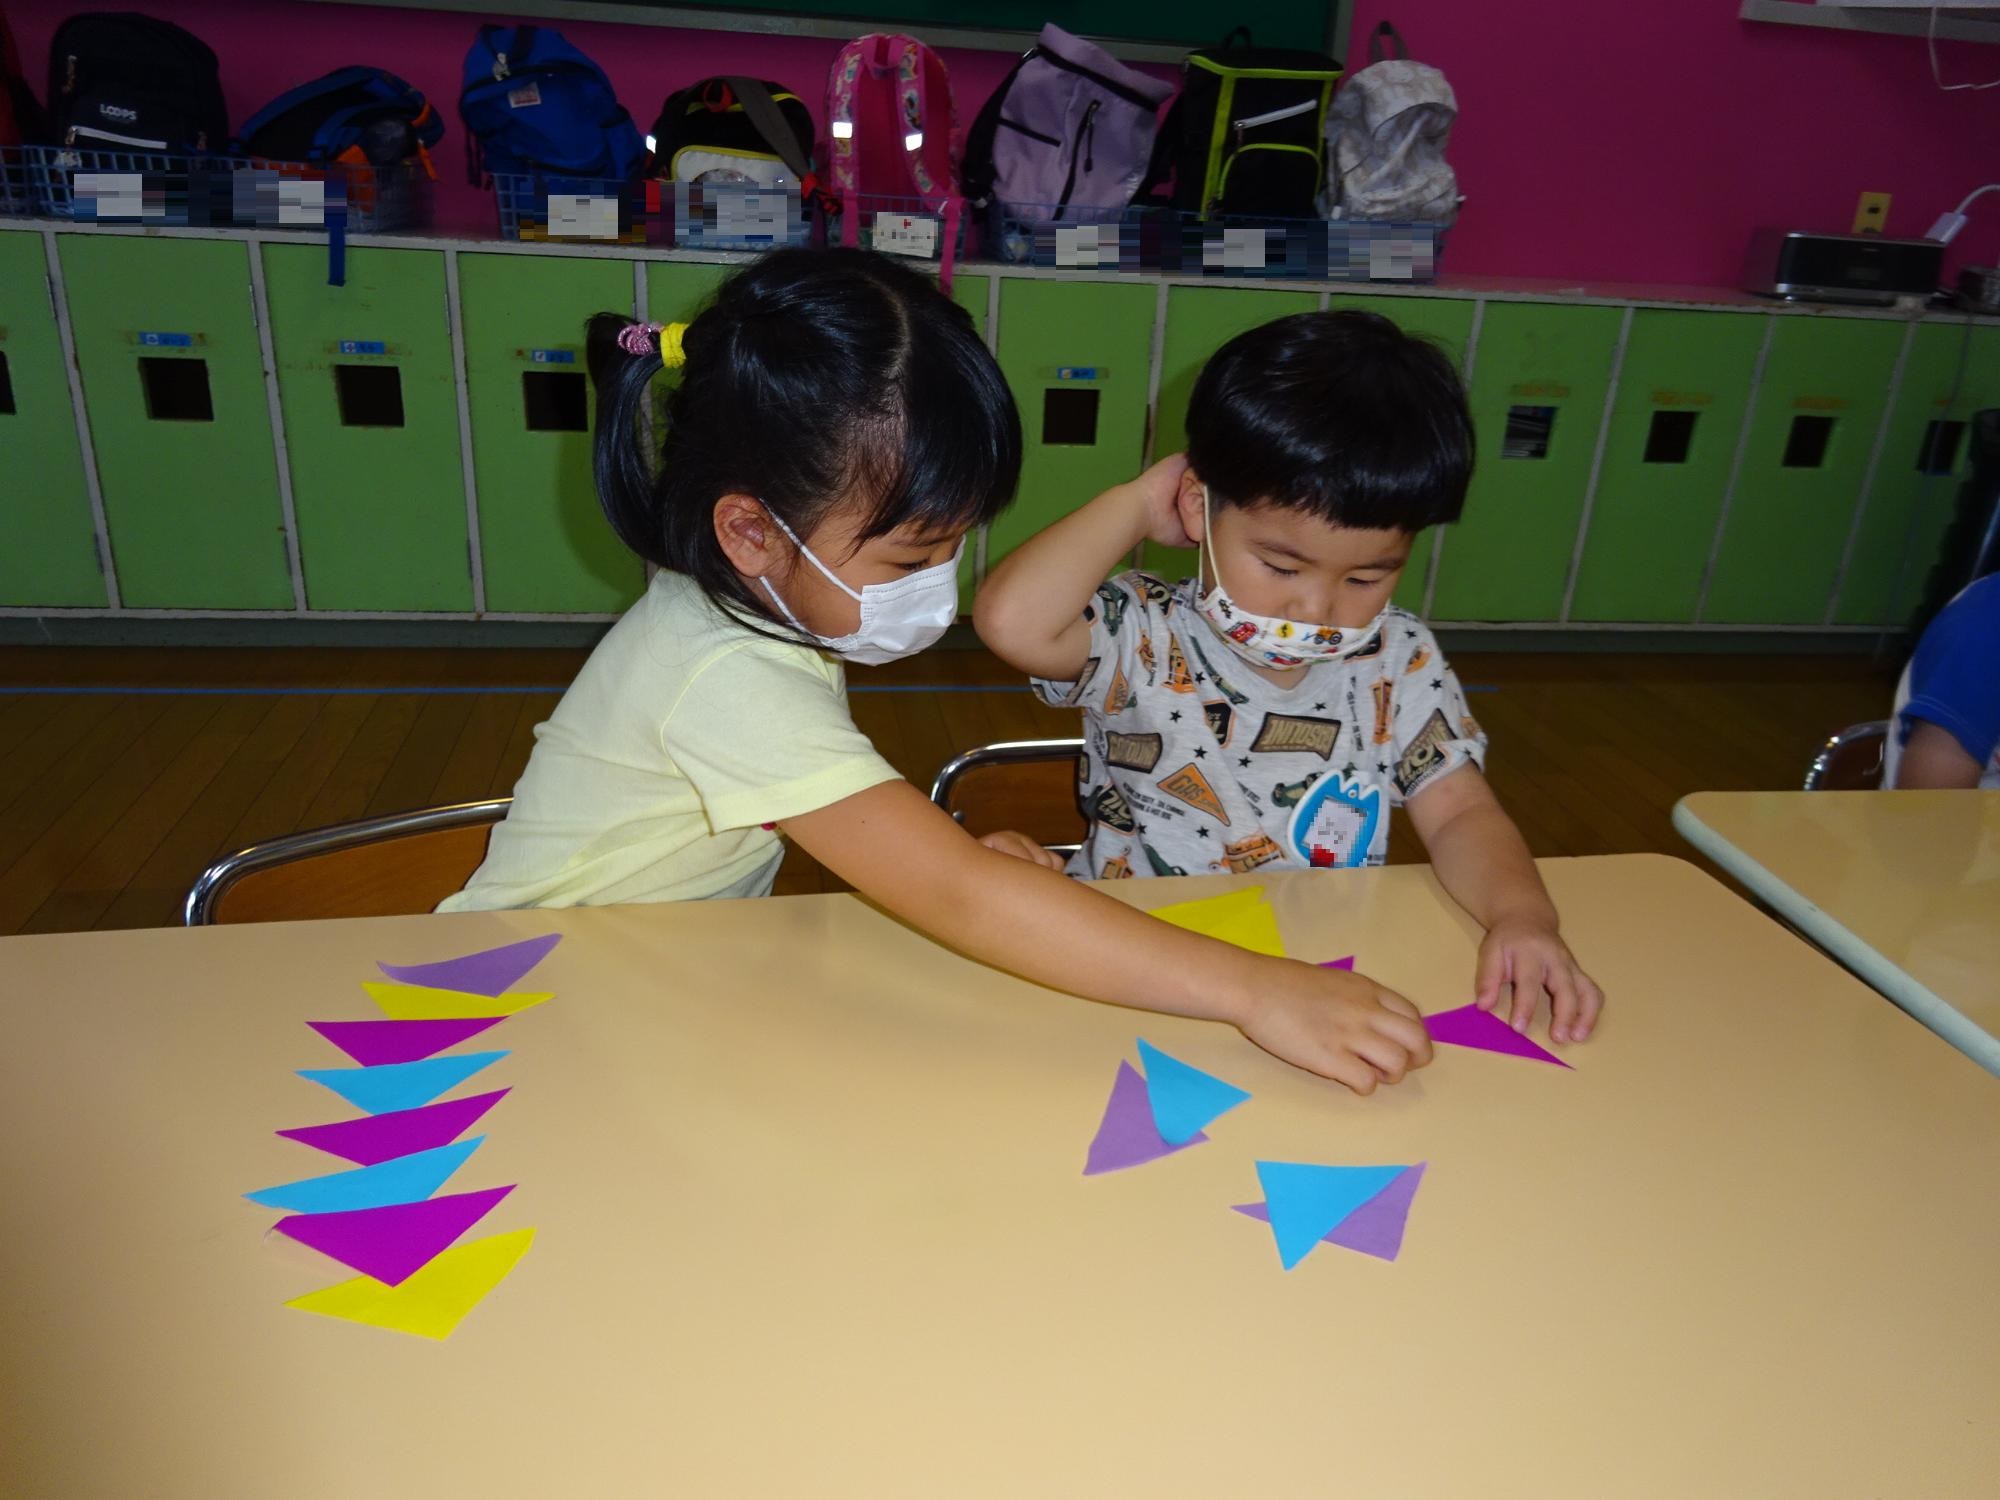 お姉さんが小さい子に折り紙の貼り方を教えているところ